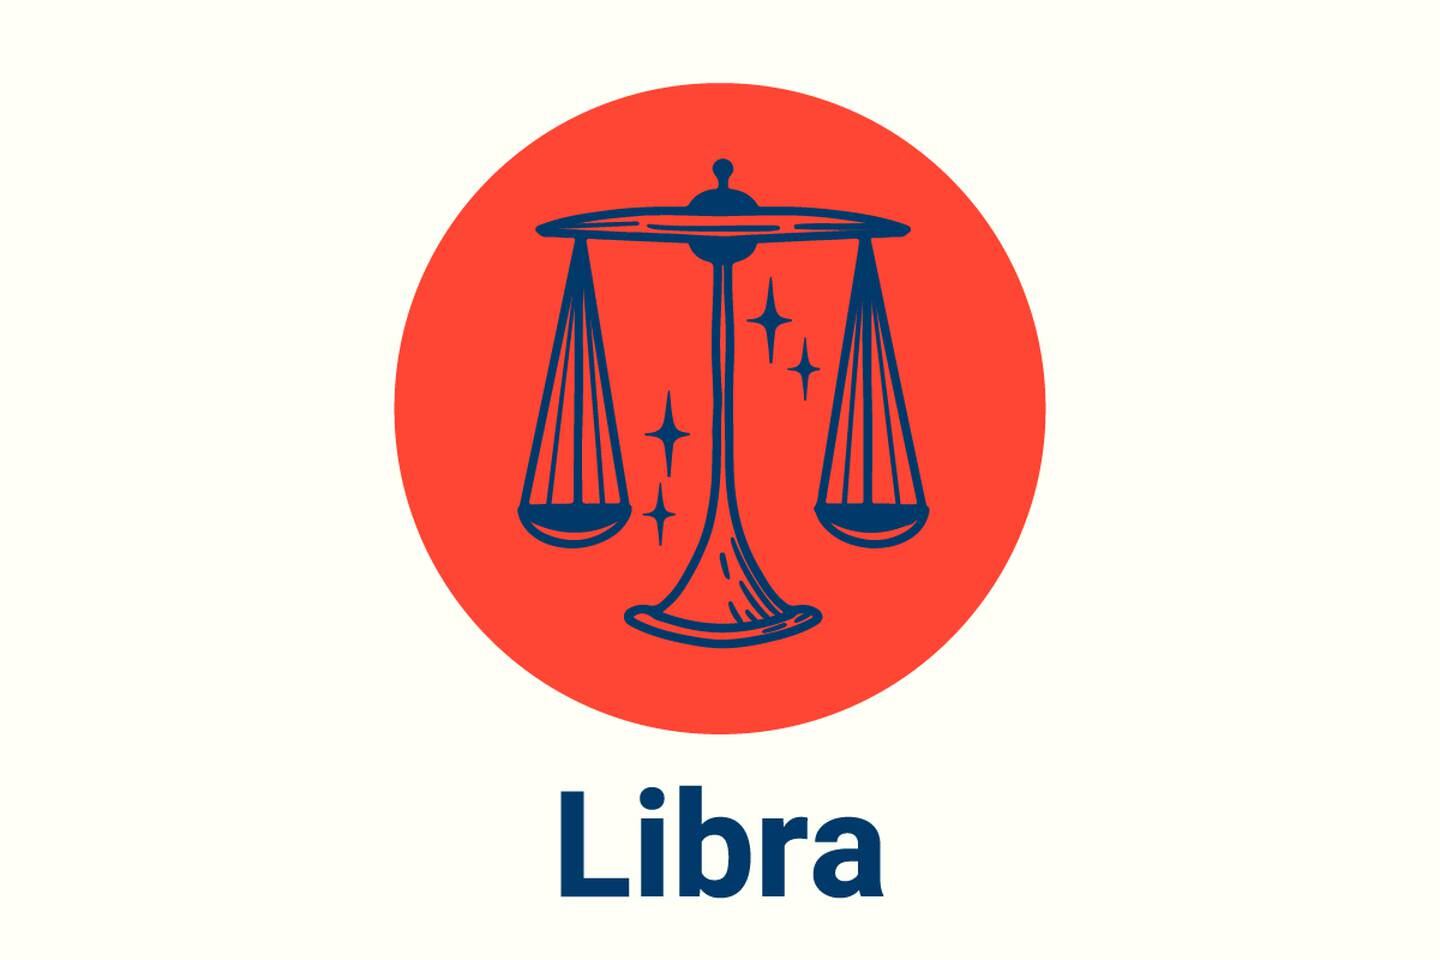 Imagen con el símbolo del signo zodiacal Libra.